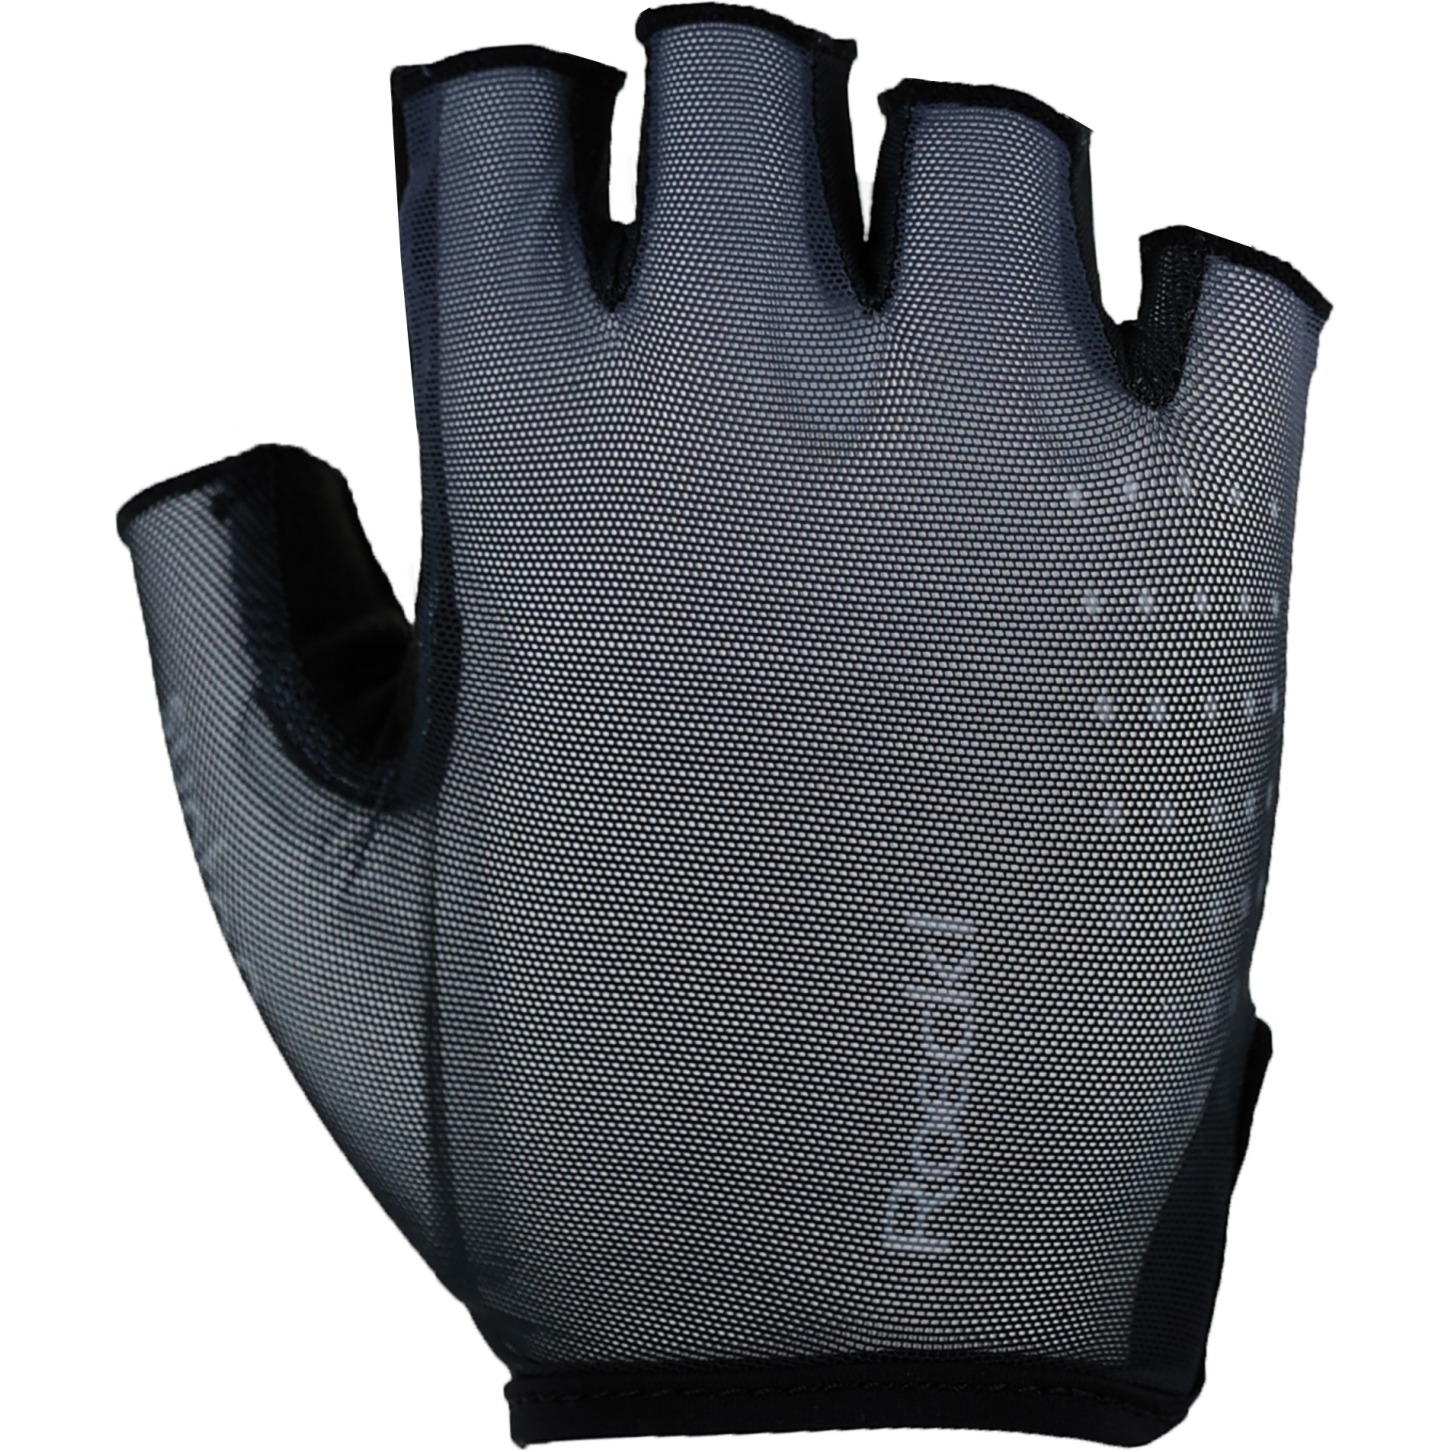 Productfoto van Roeckl Sports Istia Fietshandschoenen - black shadow 9600